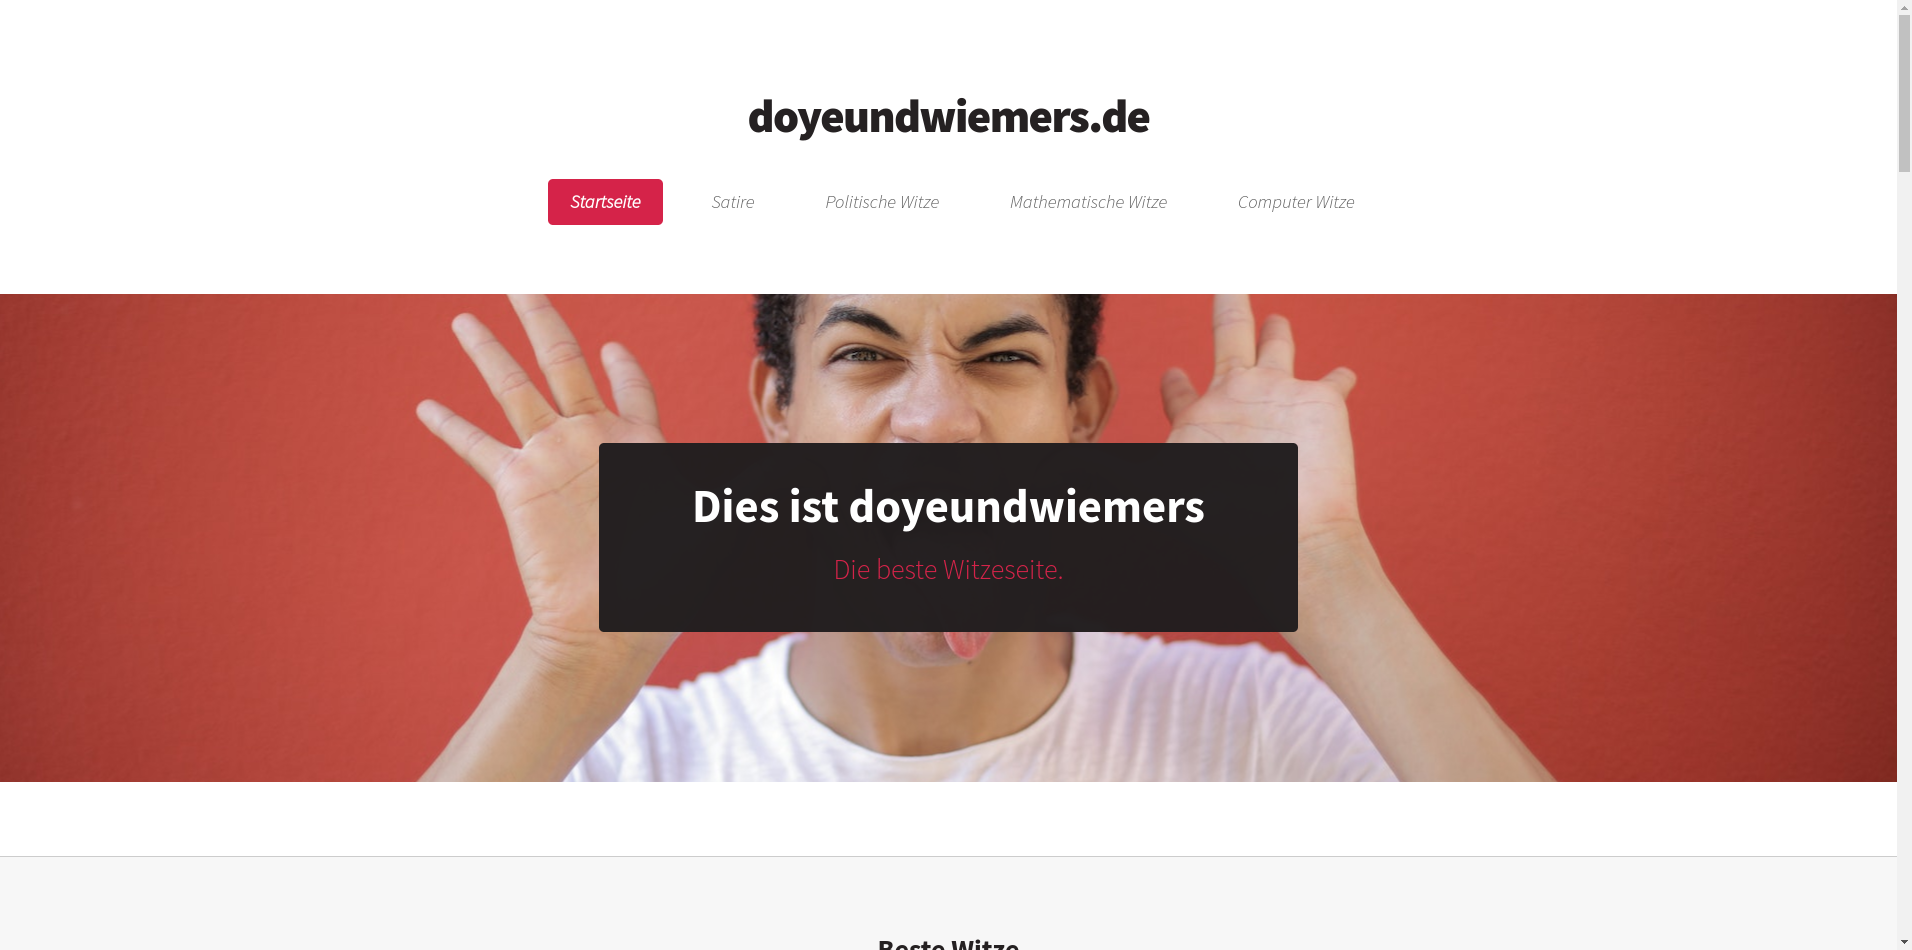 www.doyeundwiemers.de